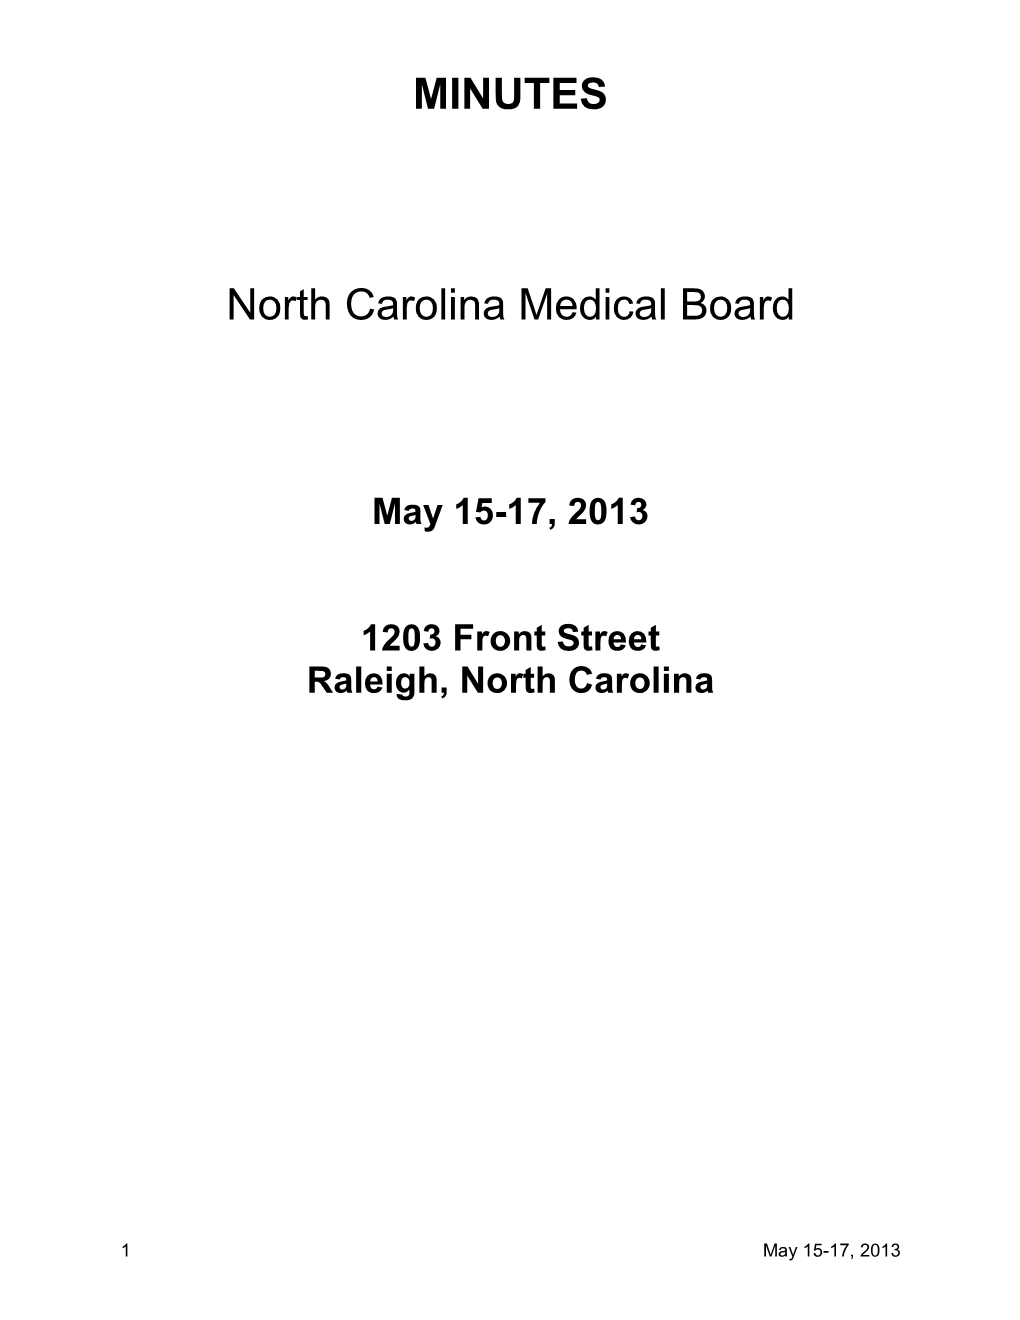 May 15-17, 2013 1203 Front Street Raleigh, North Carolina